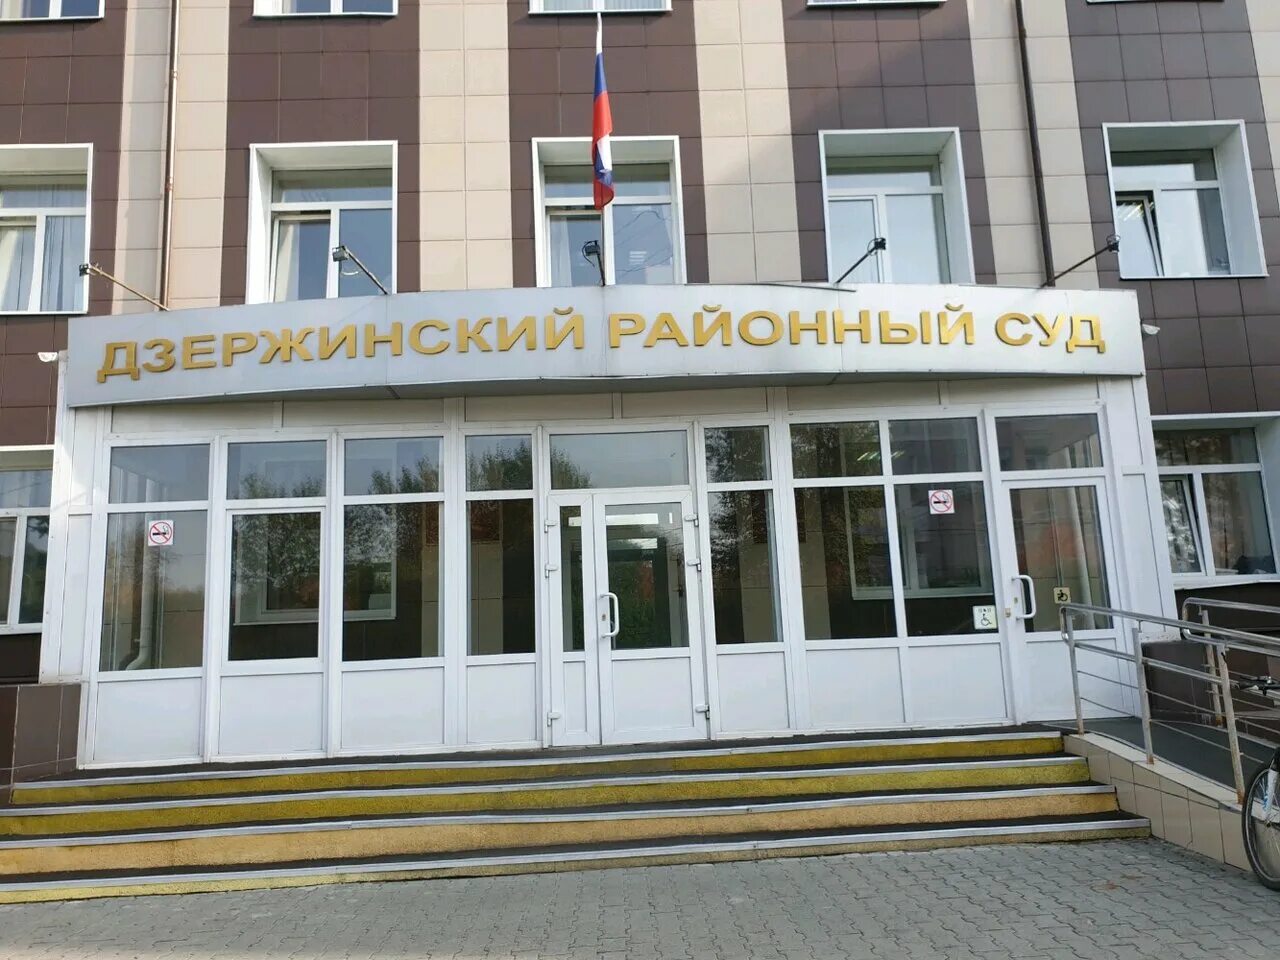 Пермский районный суд пермь пермский край